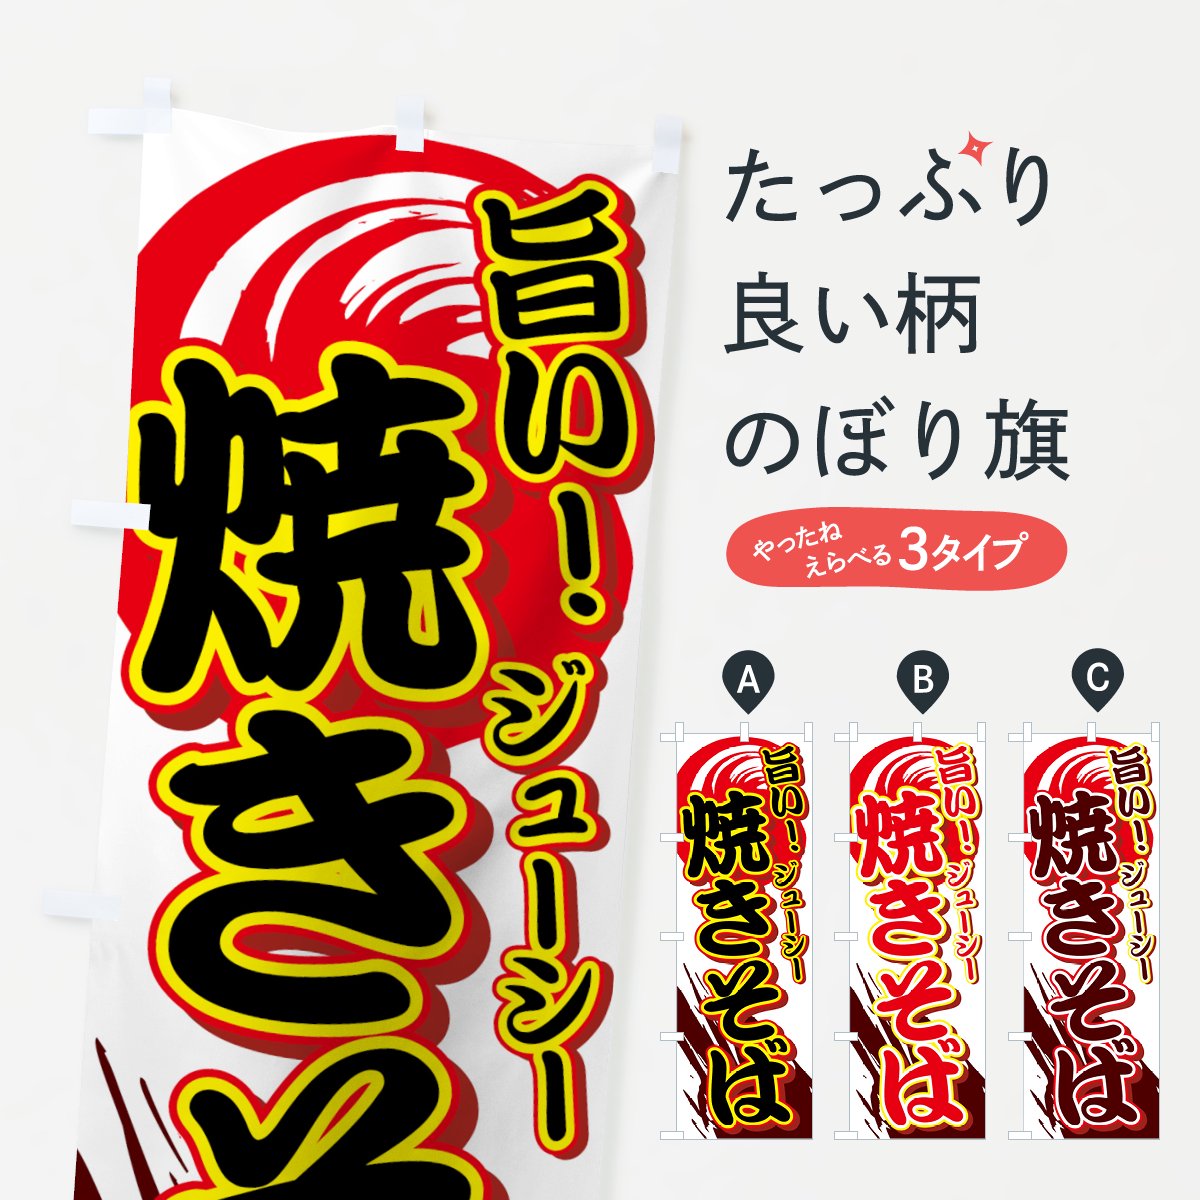 のぼり旗 3枚セット 塩焼きそば (黄) EN-483 - 店舗用品